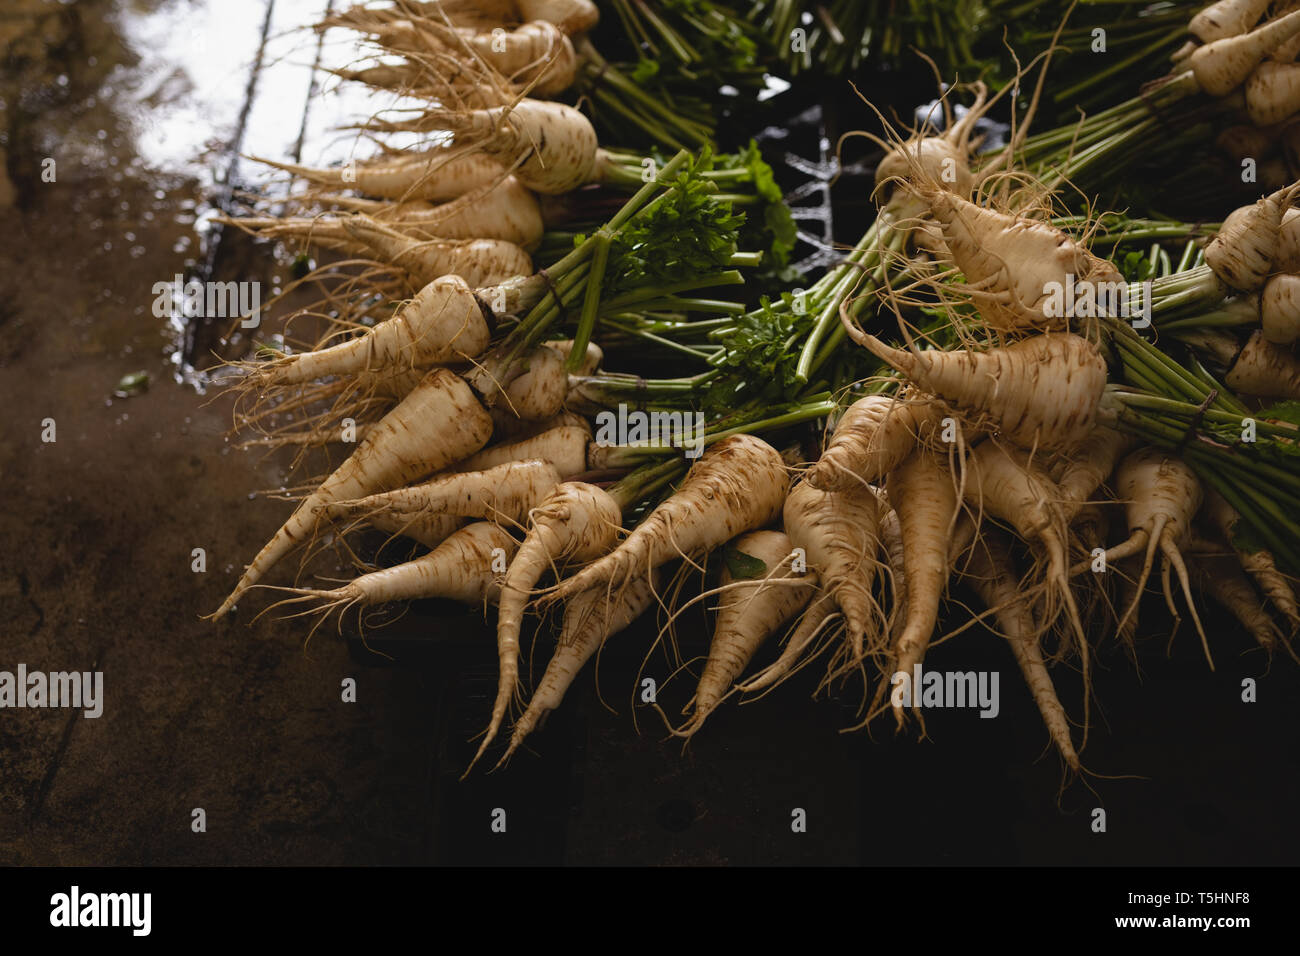 Bunch of radish in farm Stock Photo